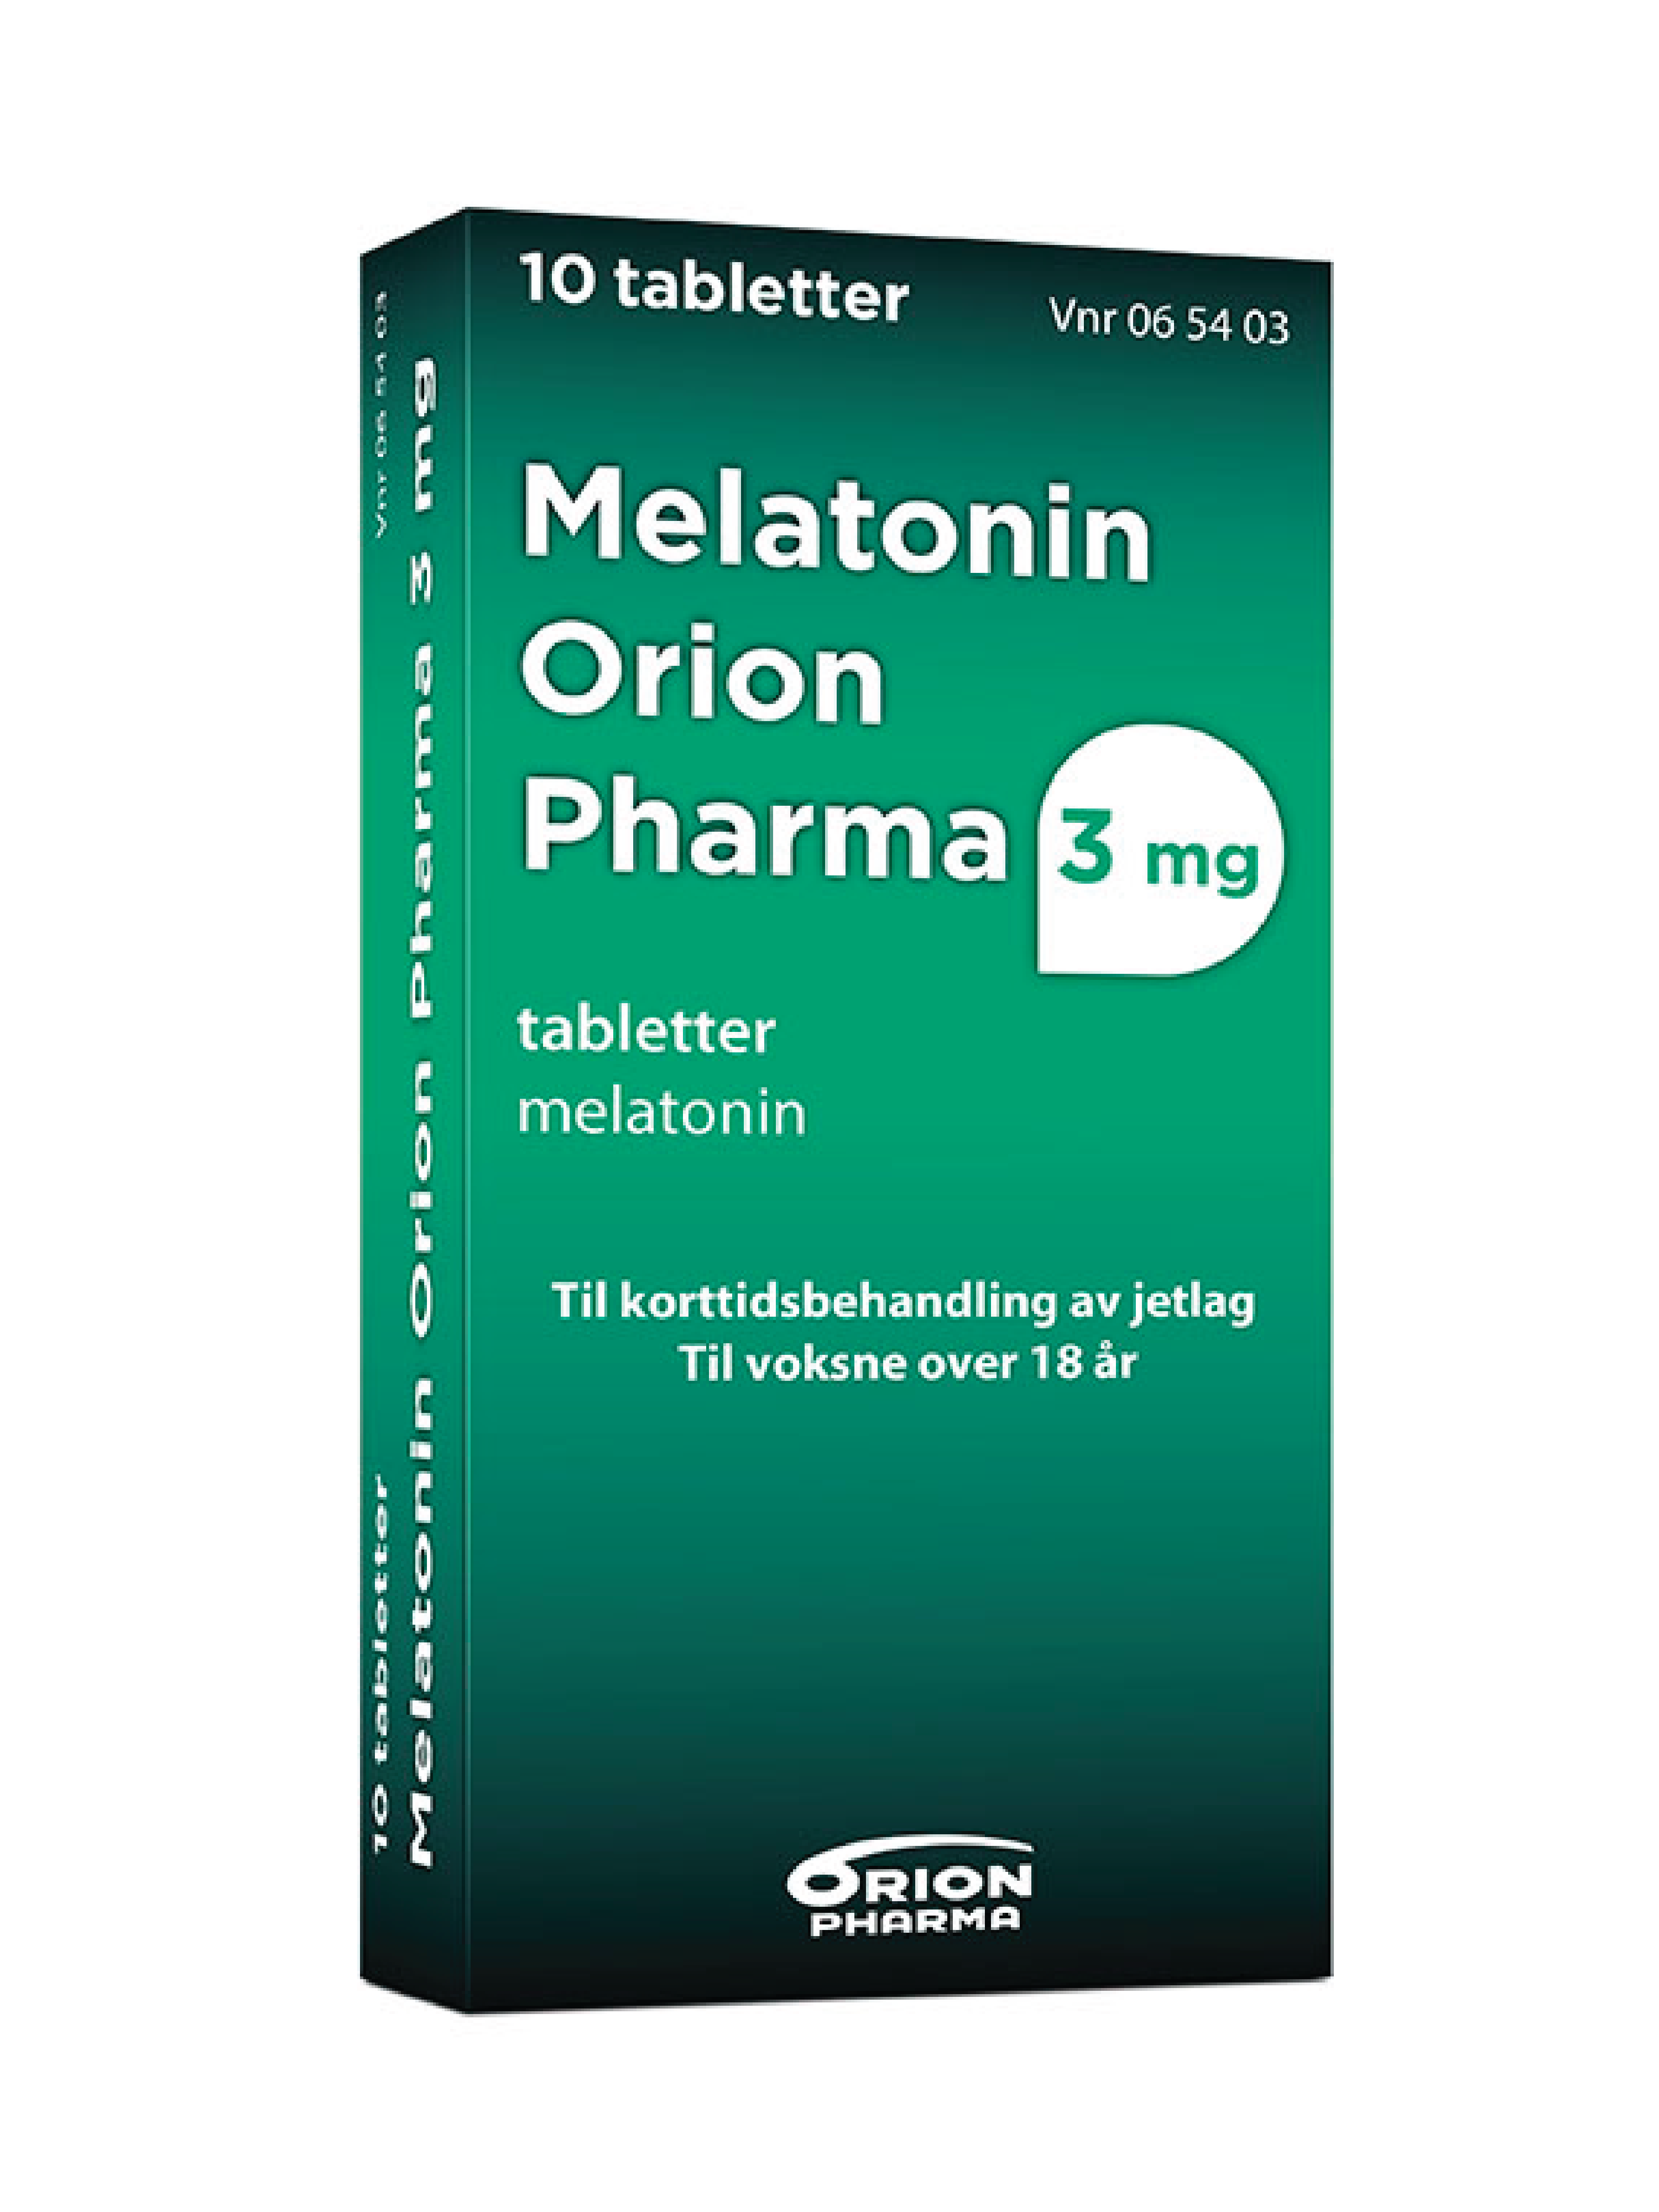 Melatonin Orion Pharma 3 mg tabletter, 10 stk.